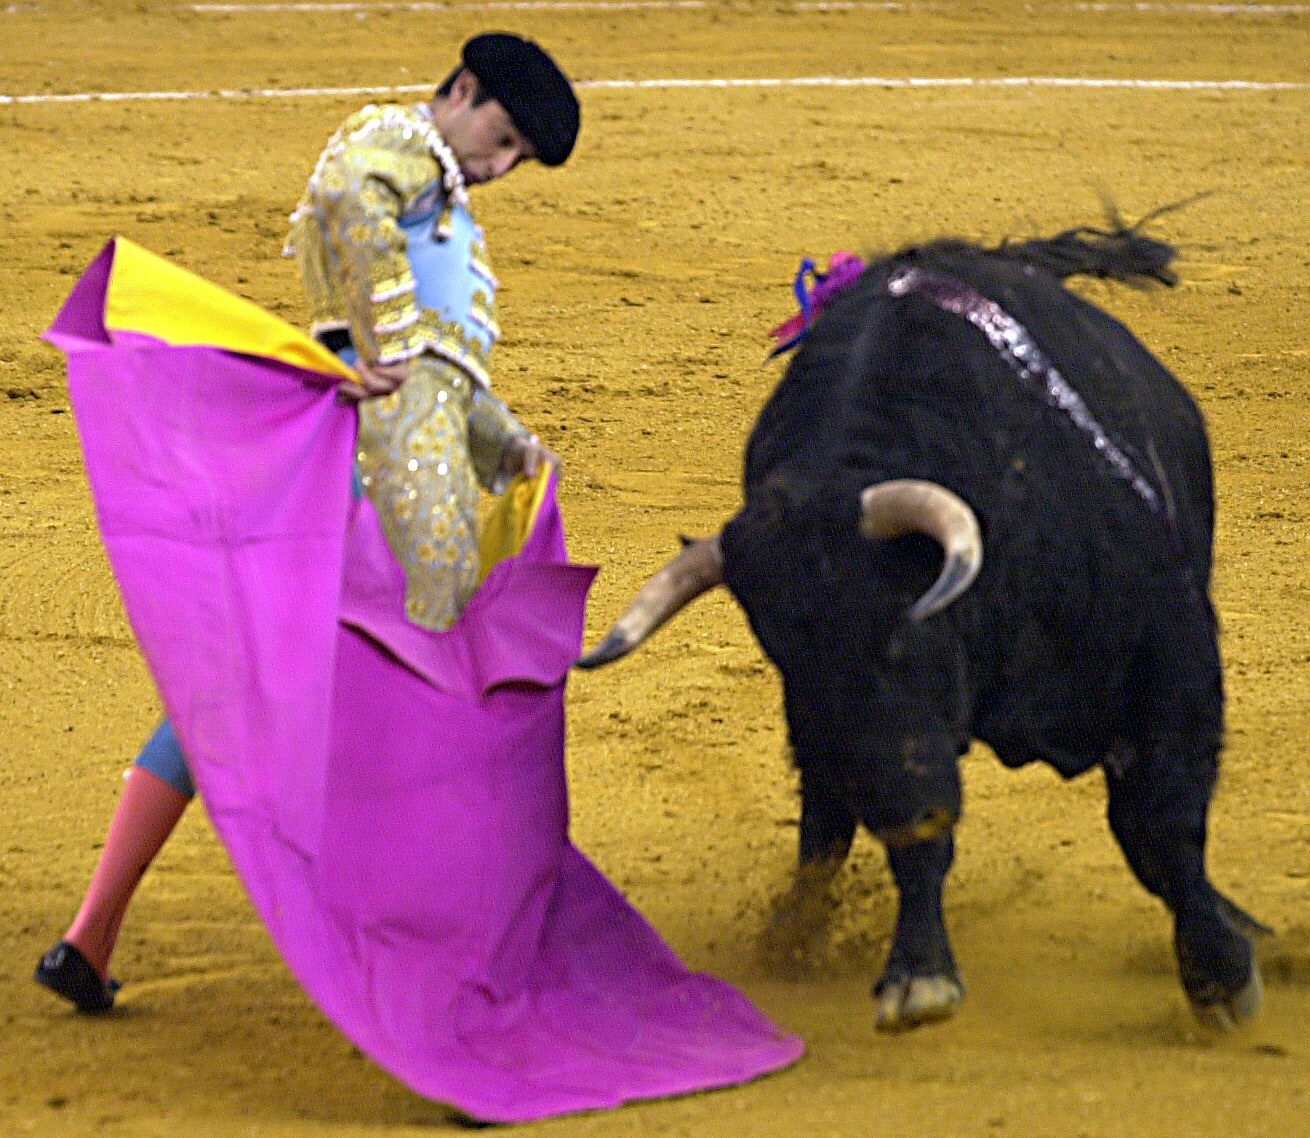 El Ayuntamiento de Madrid pierde los papeles: 30.000 euros para los toros y premios taurinos